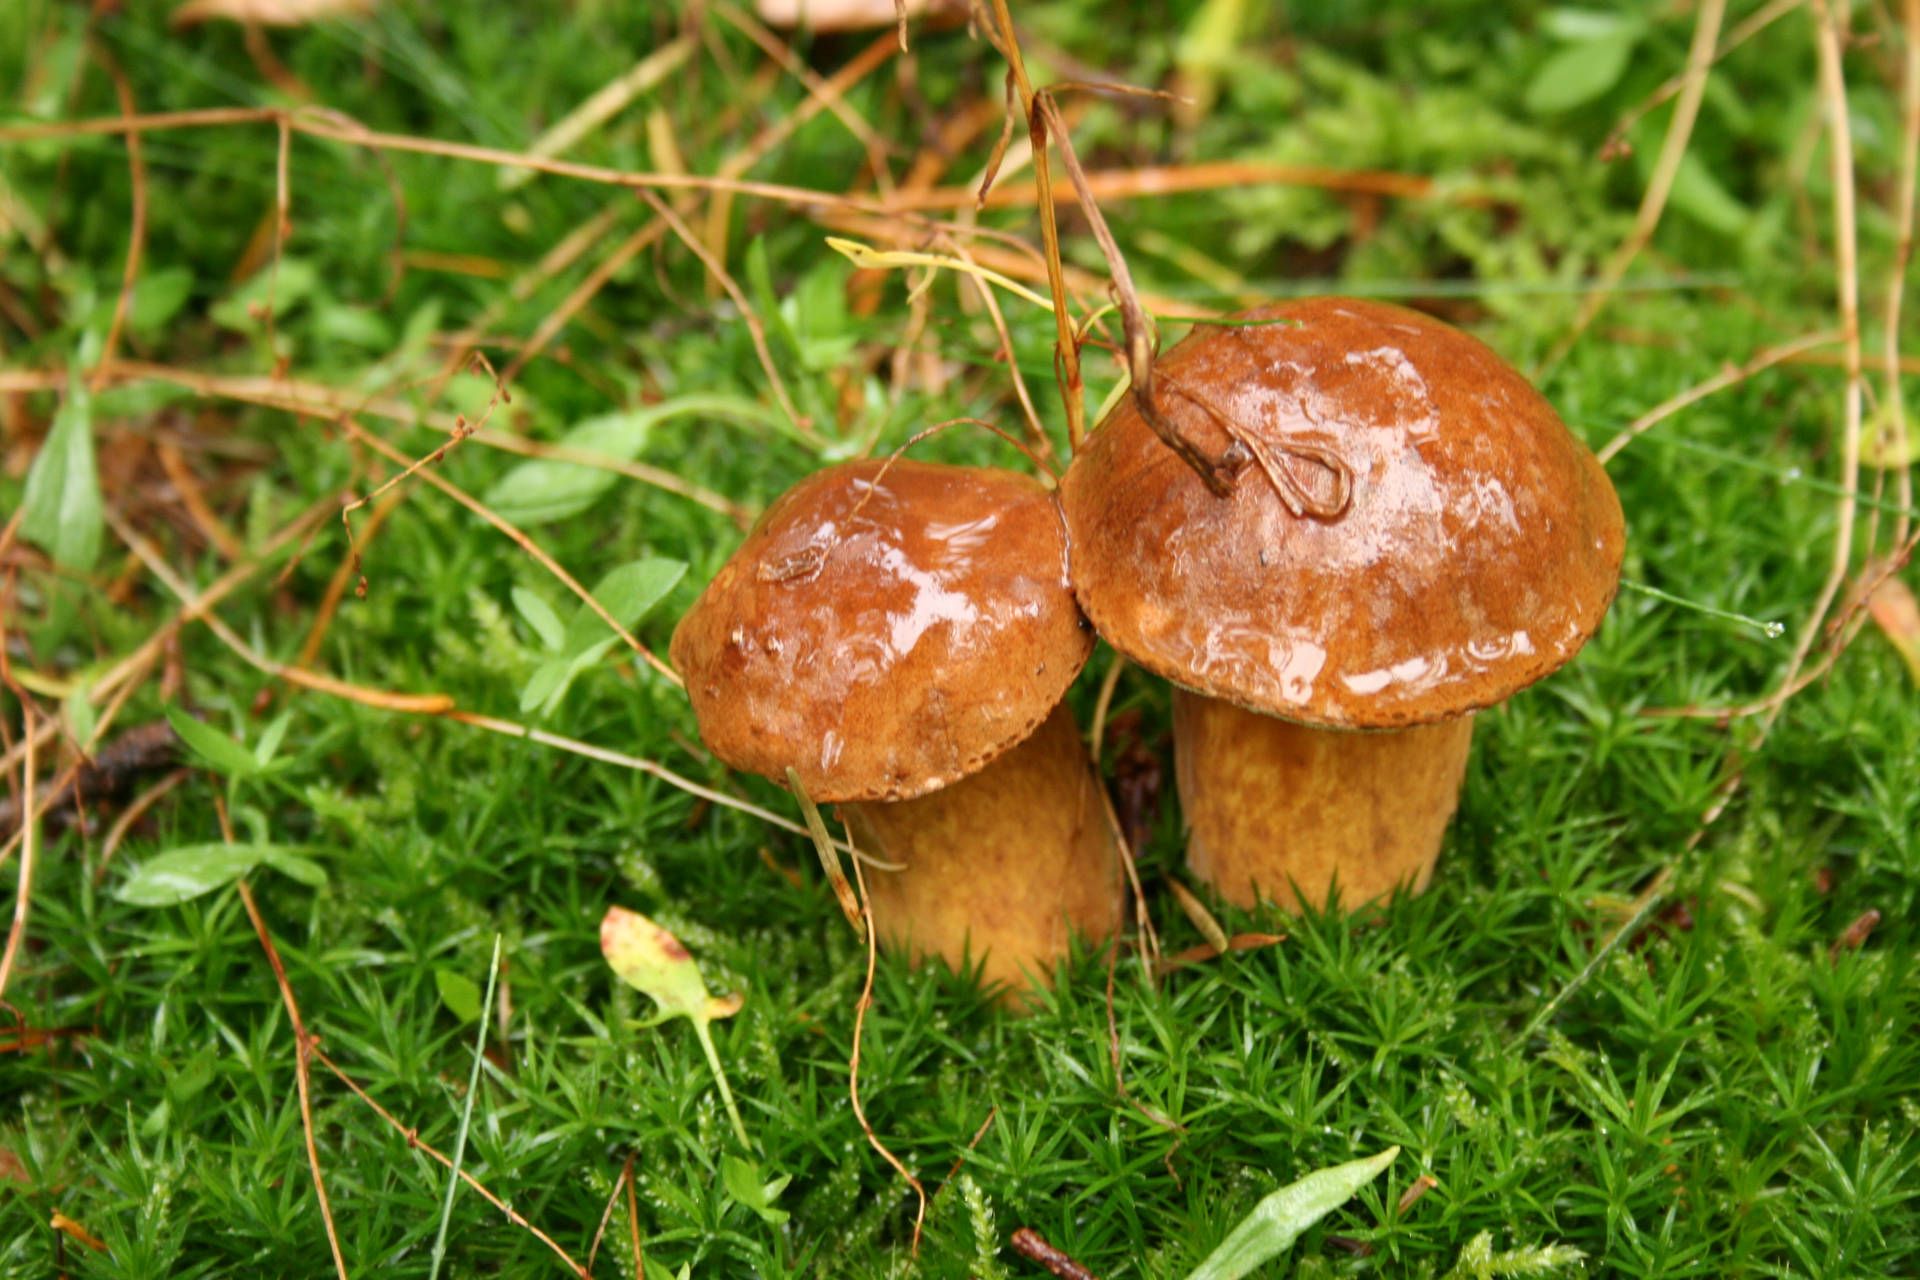 Cute Fat Mushrooms On Grass